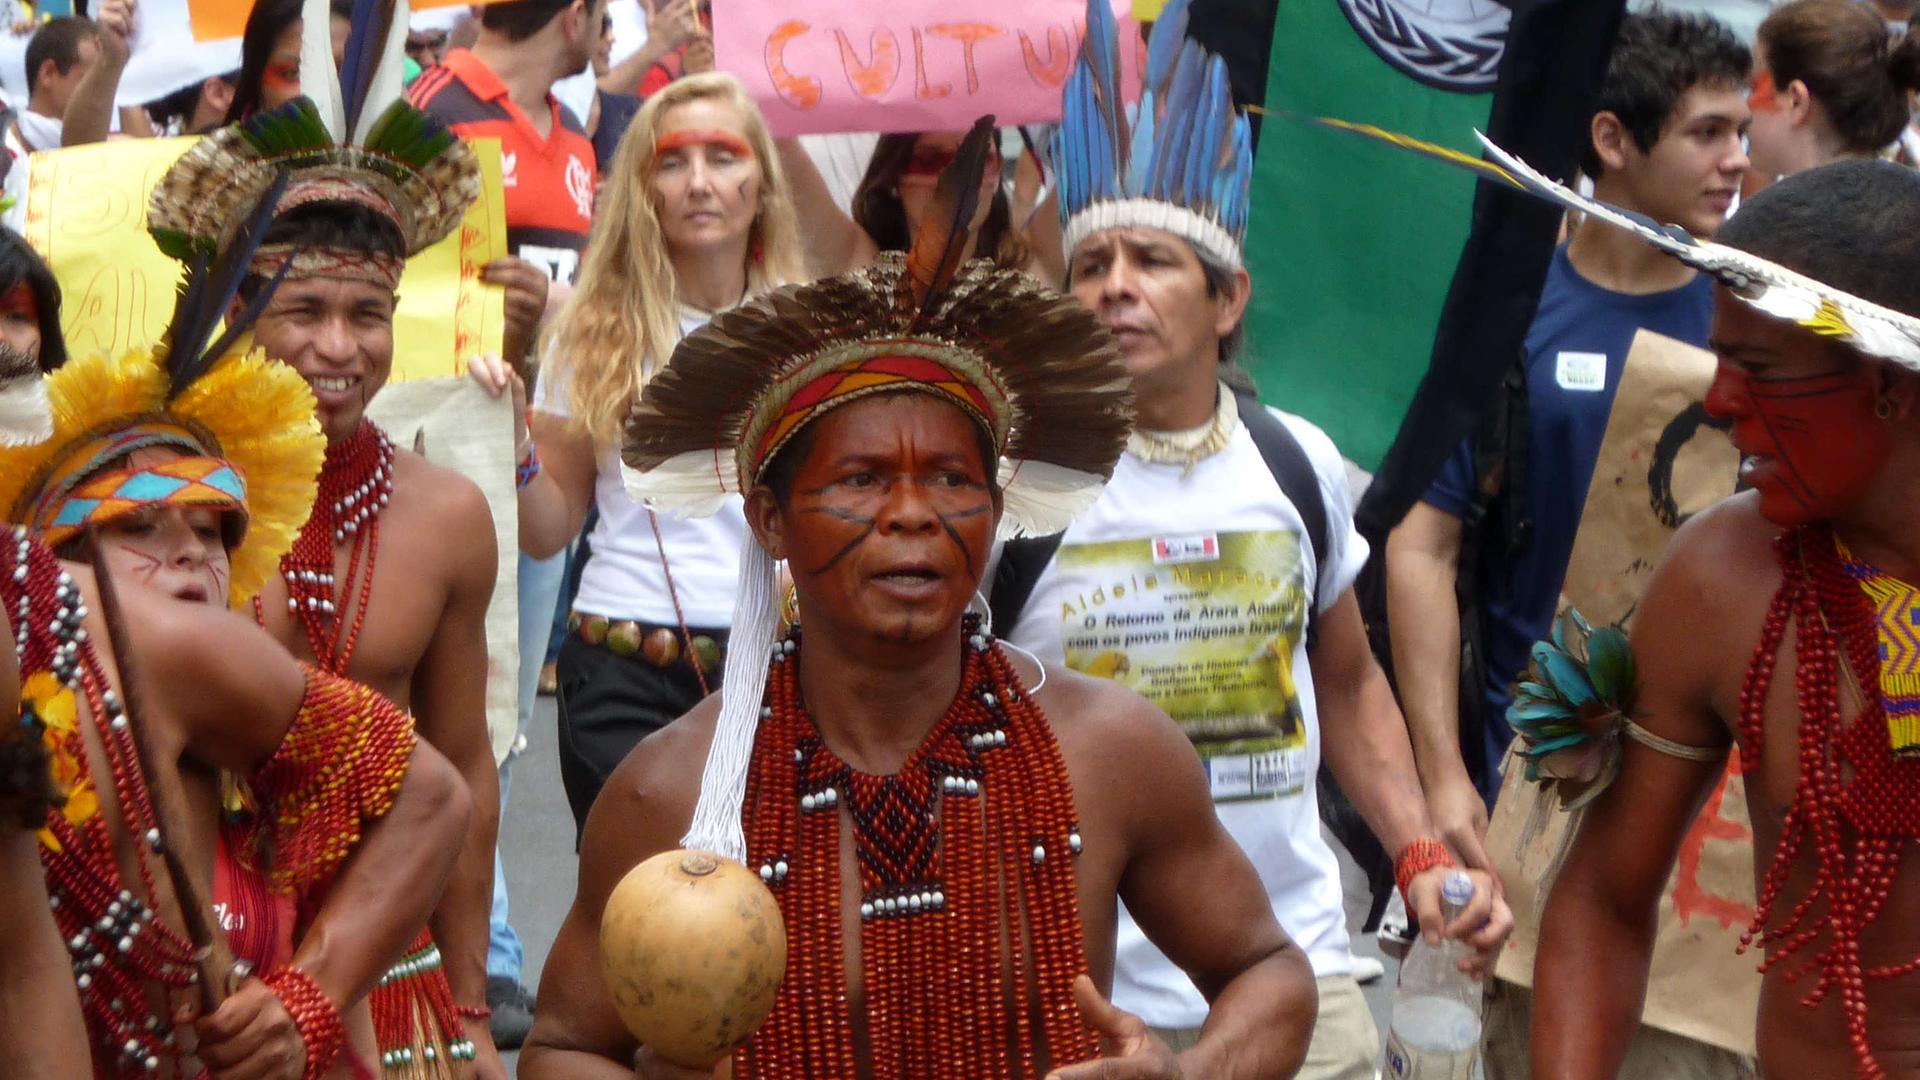 Paulo Scott begrüßt die Proteste der brasilianischen Bevölkerung. 